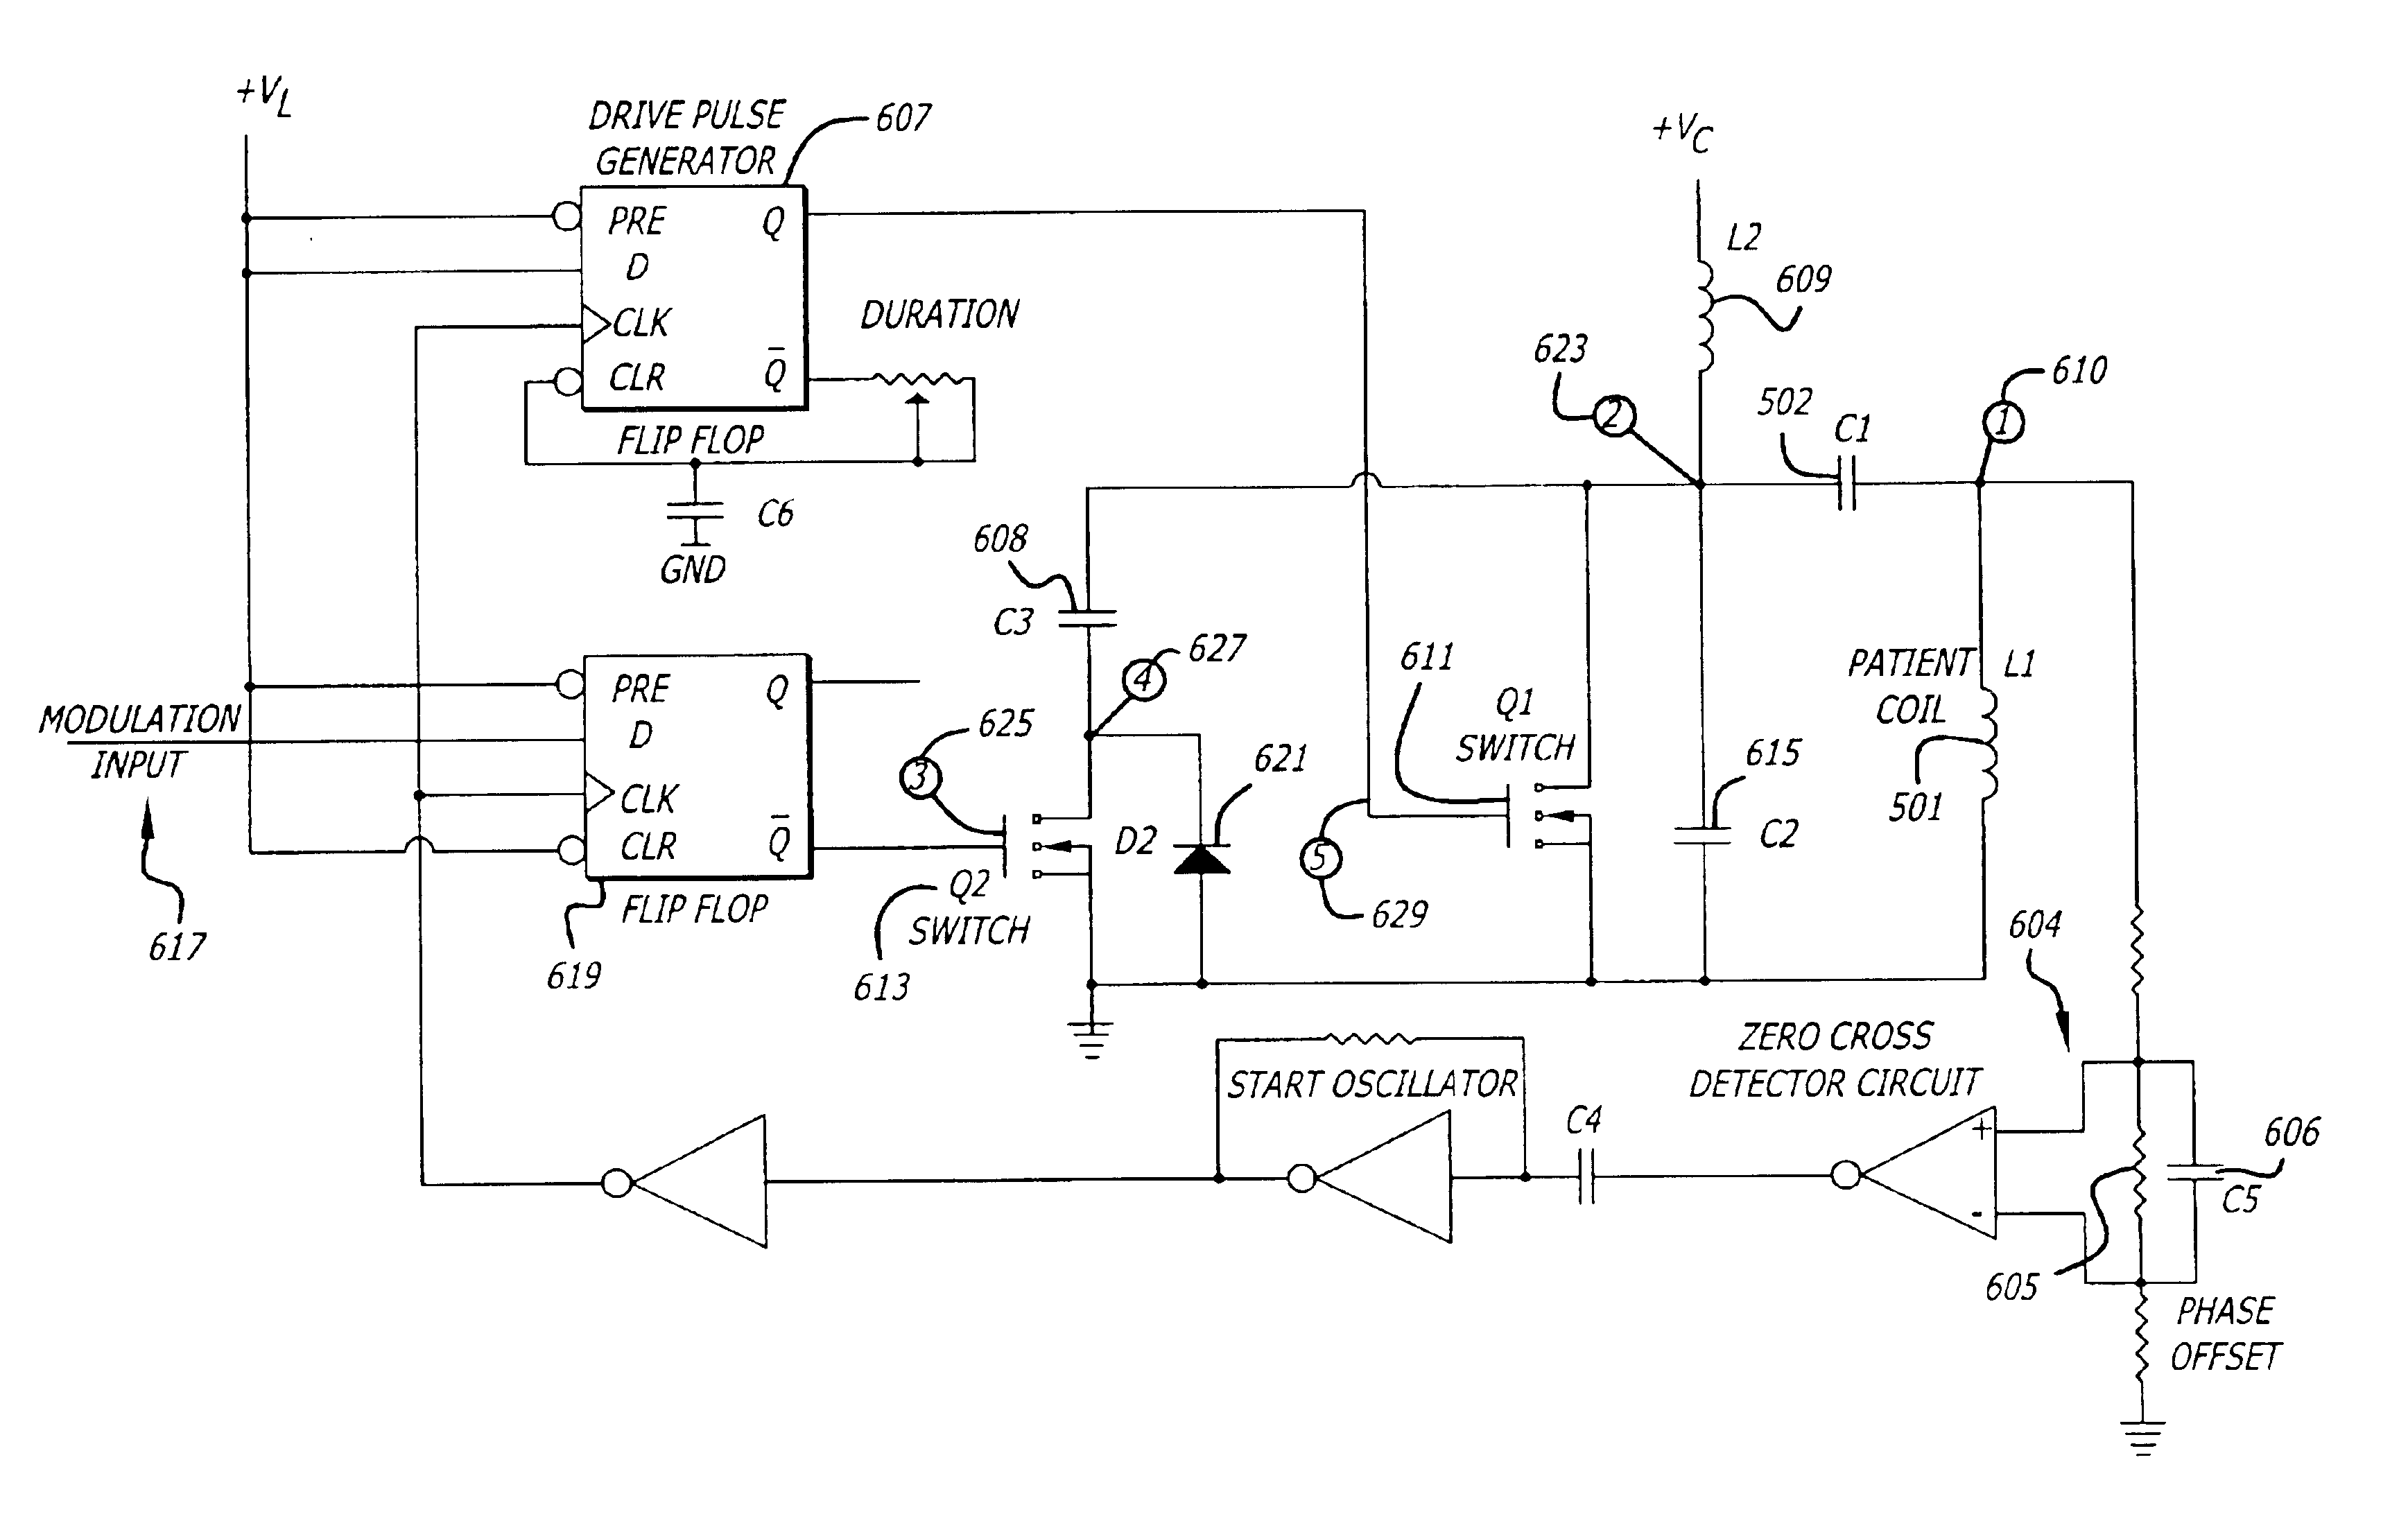 Switched reactance modulated E-class oscillator design